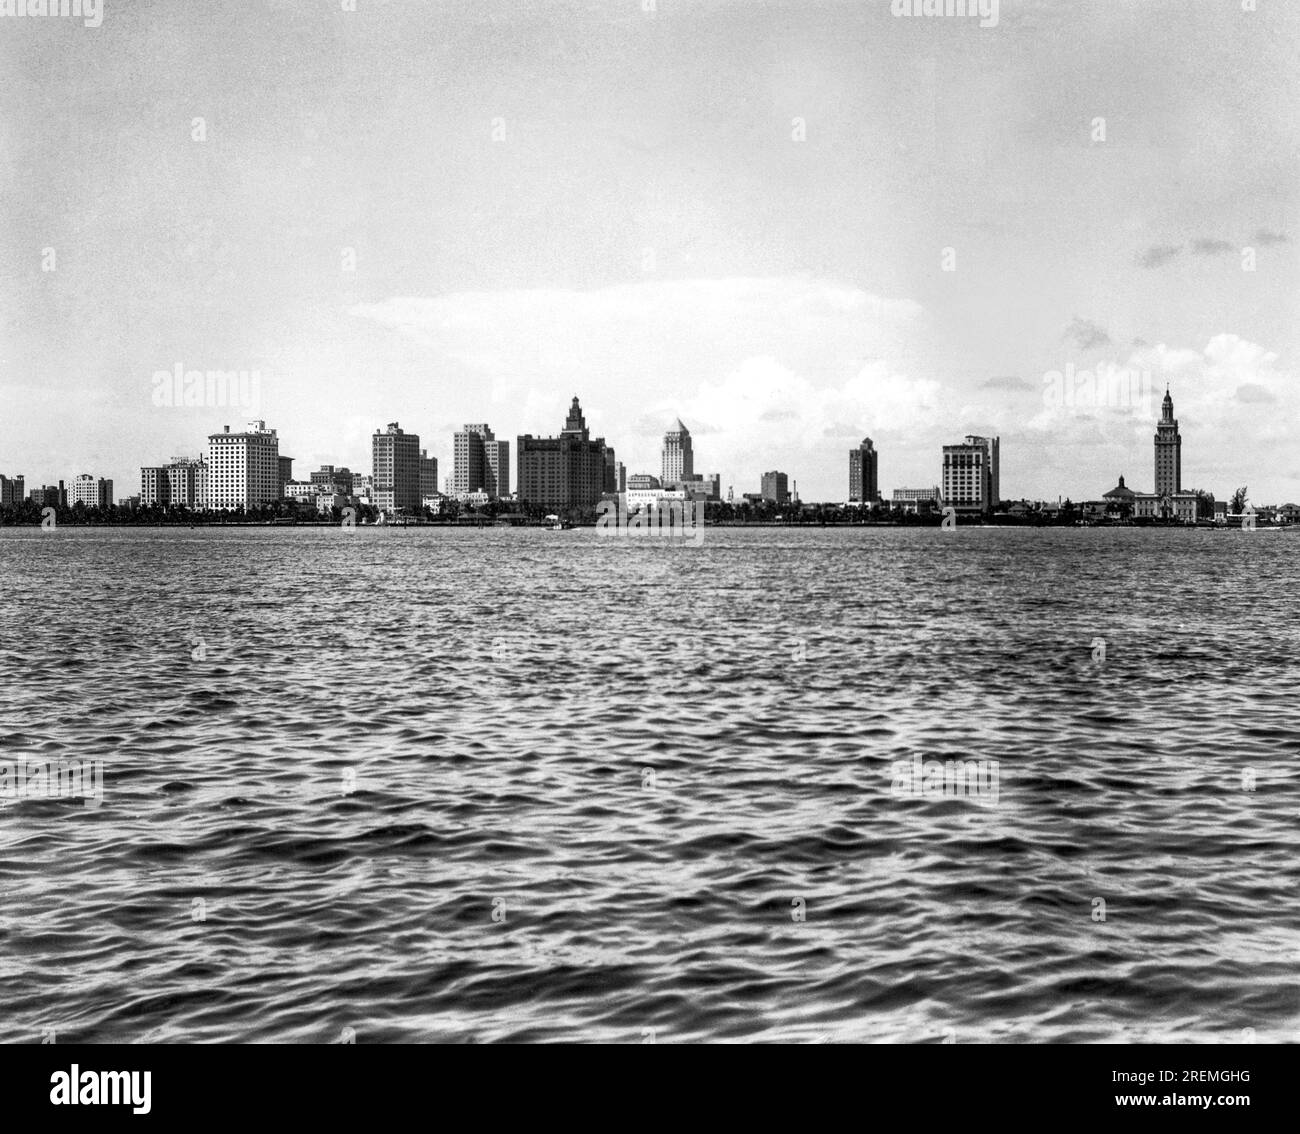 Miami, Florida: c. 1928 The skyline of Miami as seen from Miami Beach ...